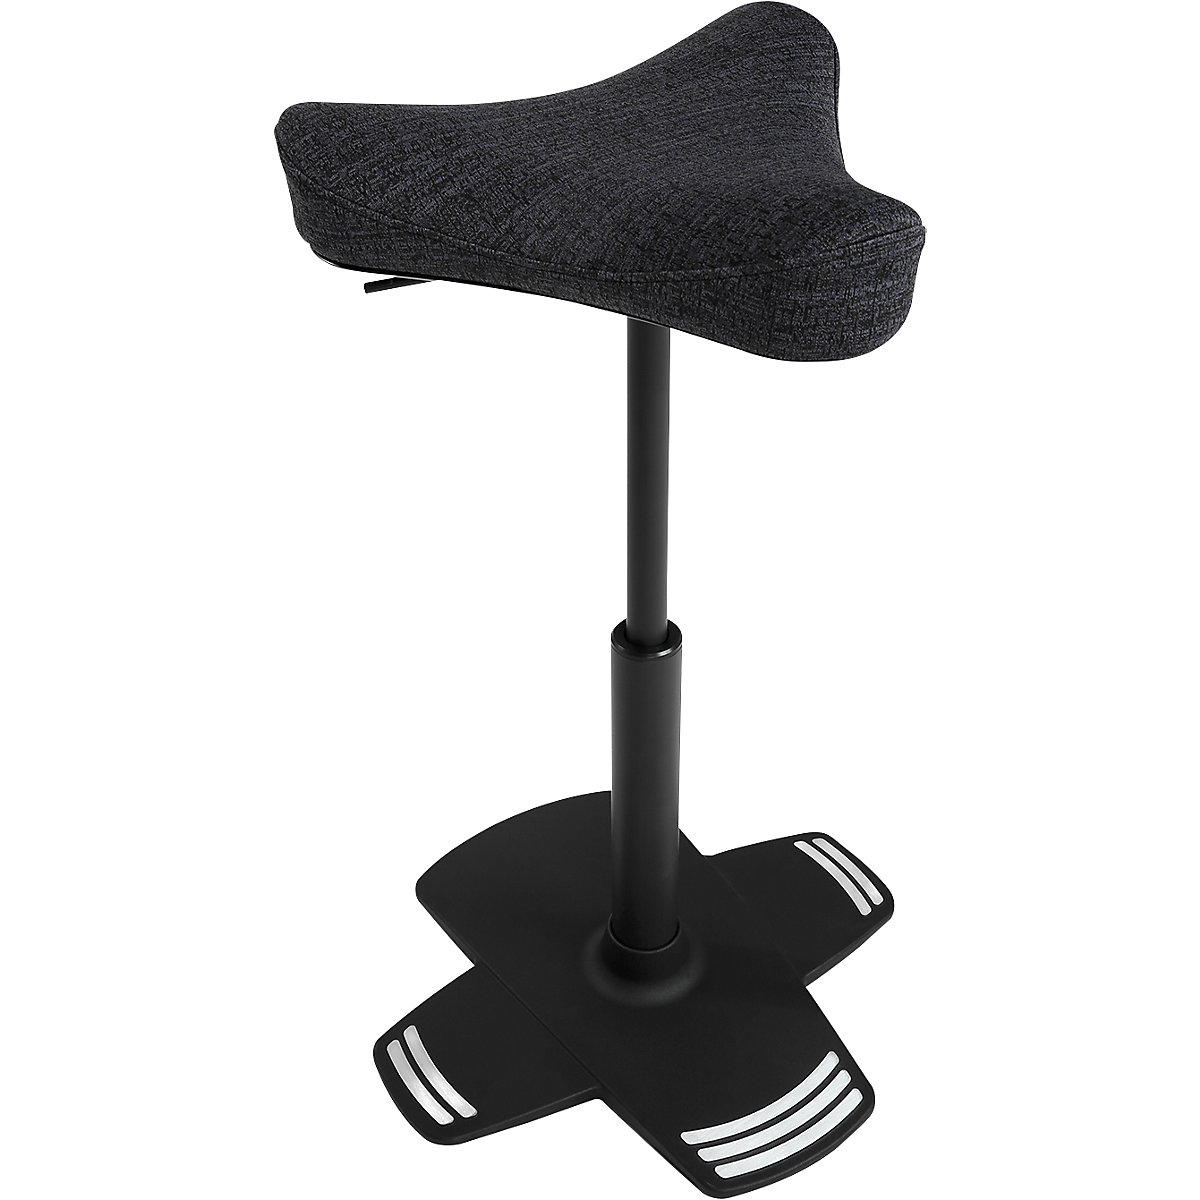 Visoki stolac SITNESS FALCON – Topstar, s ergonomski oblikovanim sedlastim sjedalom, presvlaka u crnoj boji-7